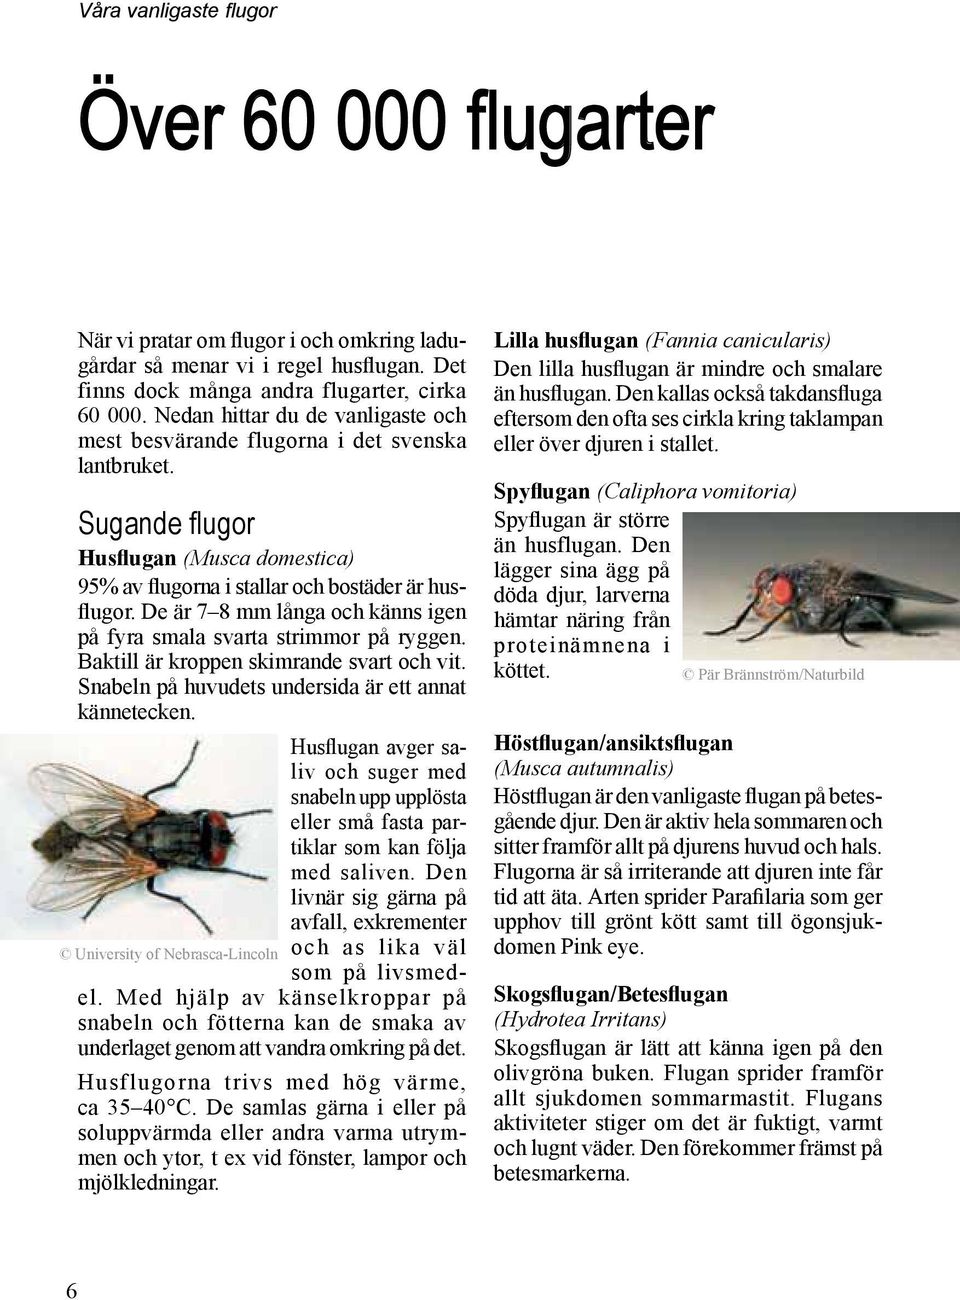 Handbok för bekämpning av. flugor. samt andra insekter och ohyra ...